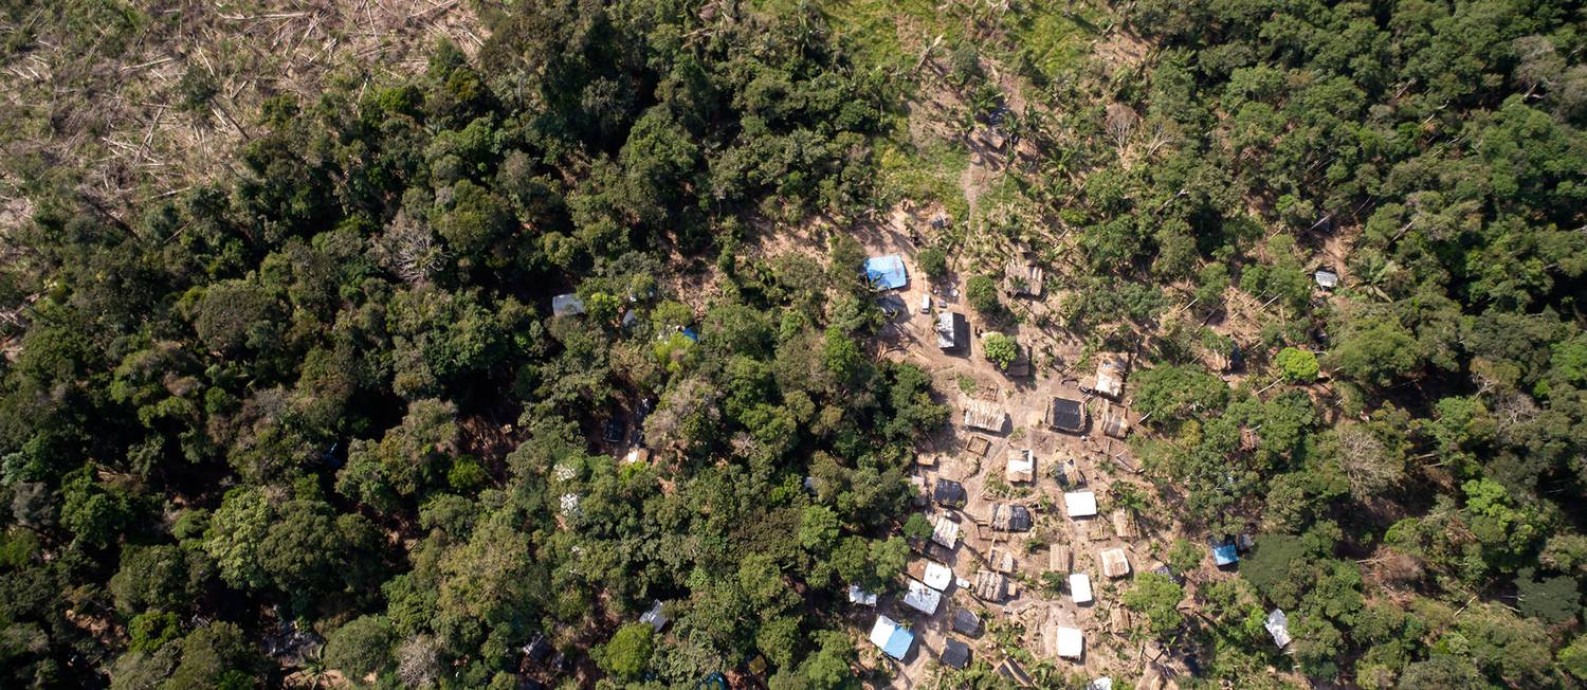 Floresta Nacional de Jacundá em Rondônia, próximo a Porto Velho, tem um assentamento em crescimento. Foto: Brenno Carvalho / Agência O Globo.